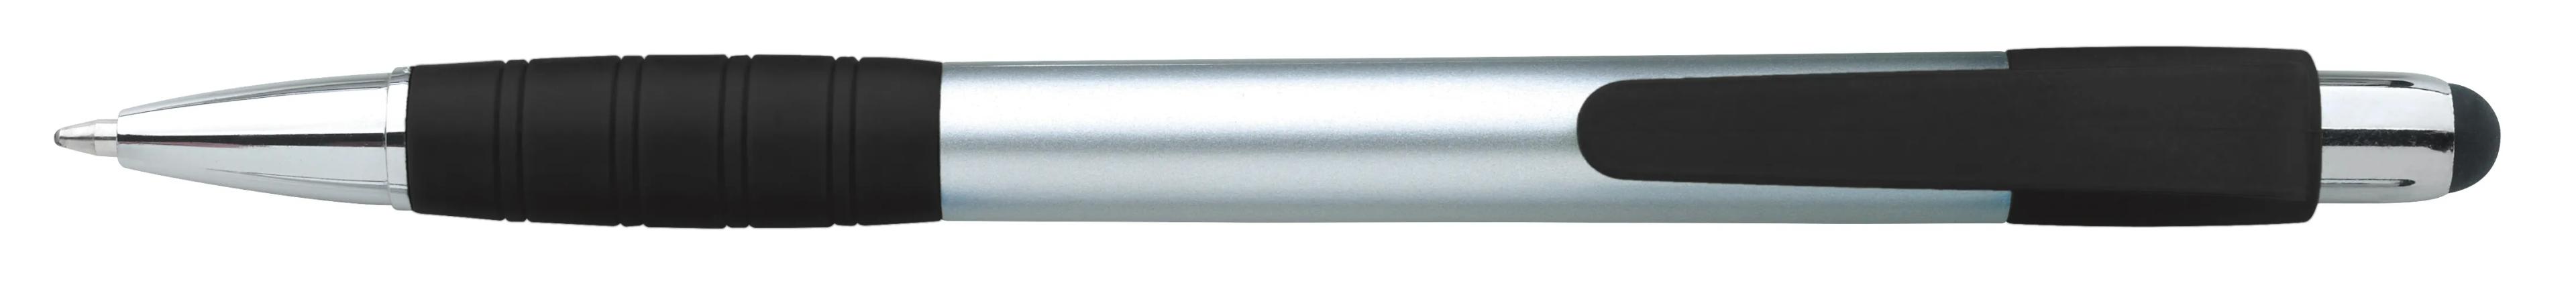 Silver Element Stylus Pen 2 of 53